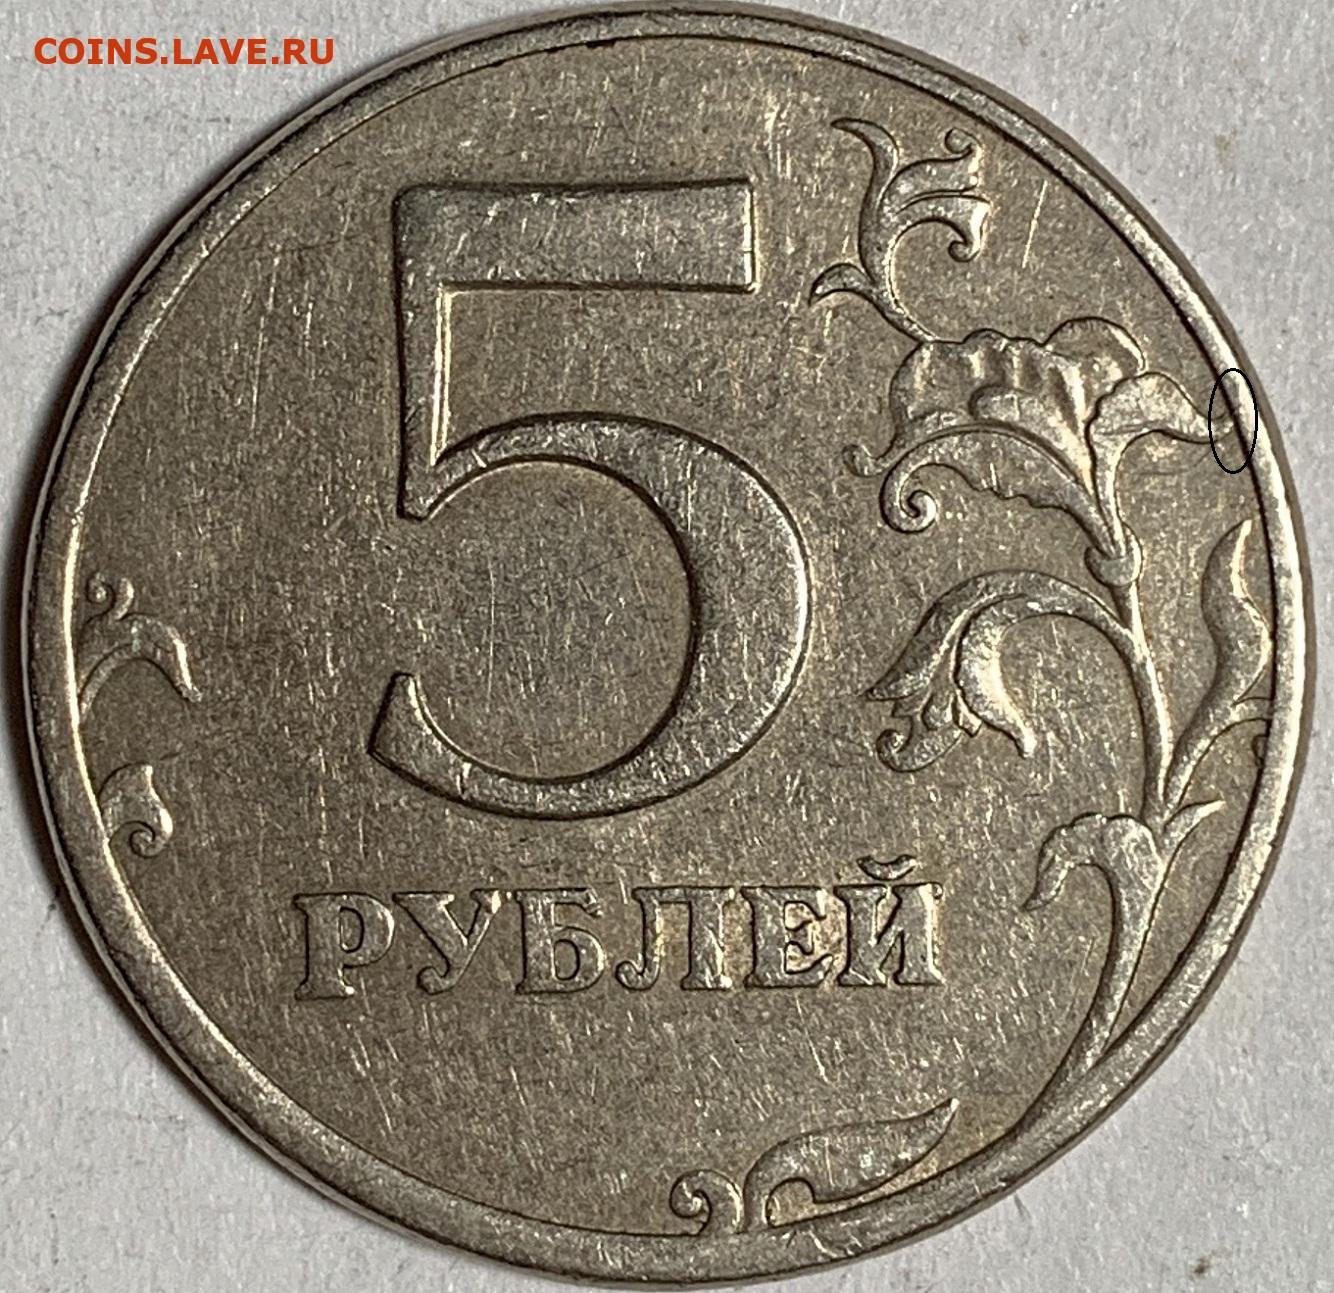 Россия 5 рублей 1997. 5 Рублей 1997 ММД. Редкие монеты 5 рублей 1997. 5 Рублей бумажные. 5 Рублей с двух сторон.